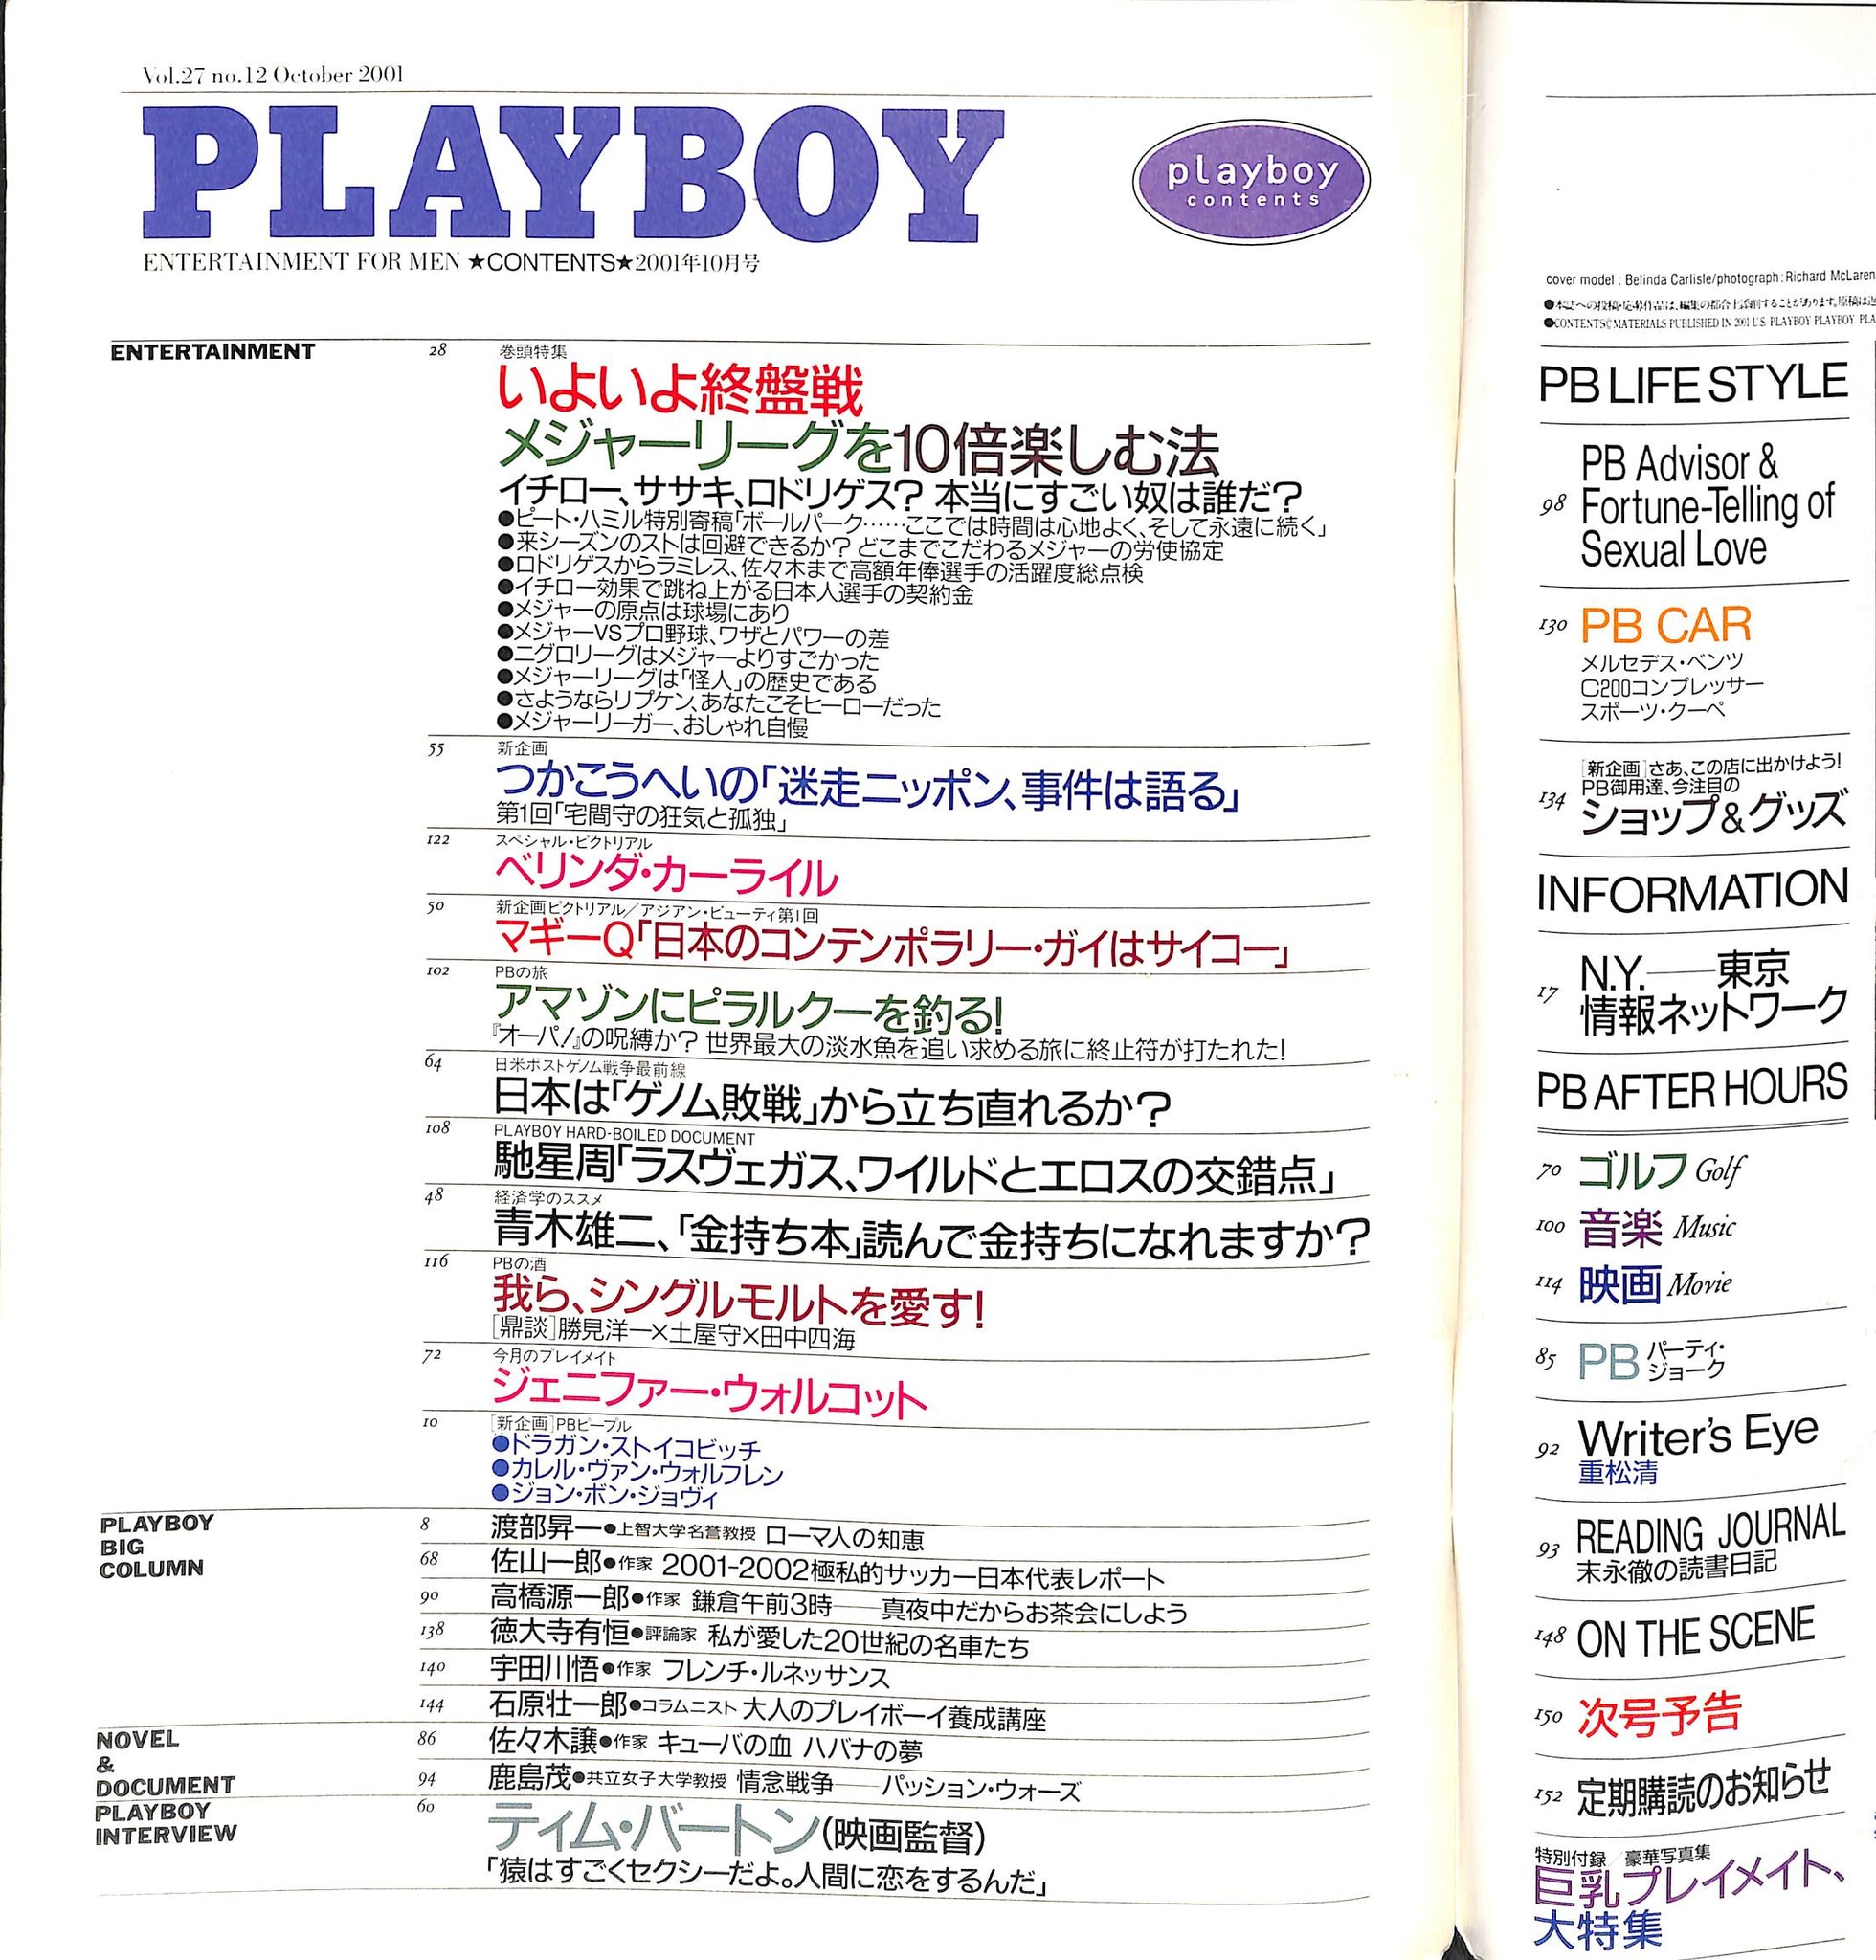 月刊 PLAYBOY プレイボーイ [日本版] 2001年10月号 メジャーリーグを10倍楽しむ法 他